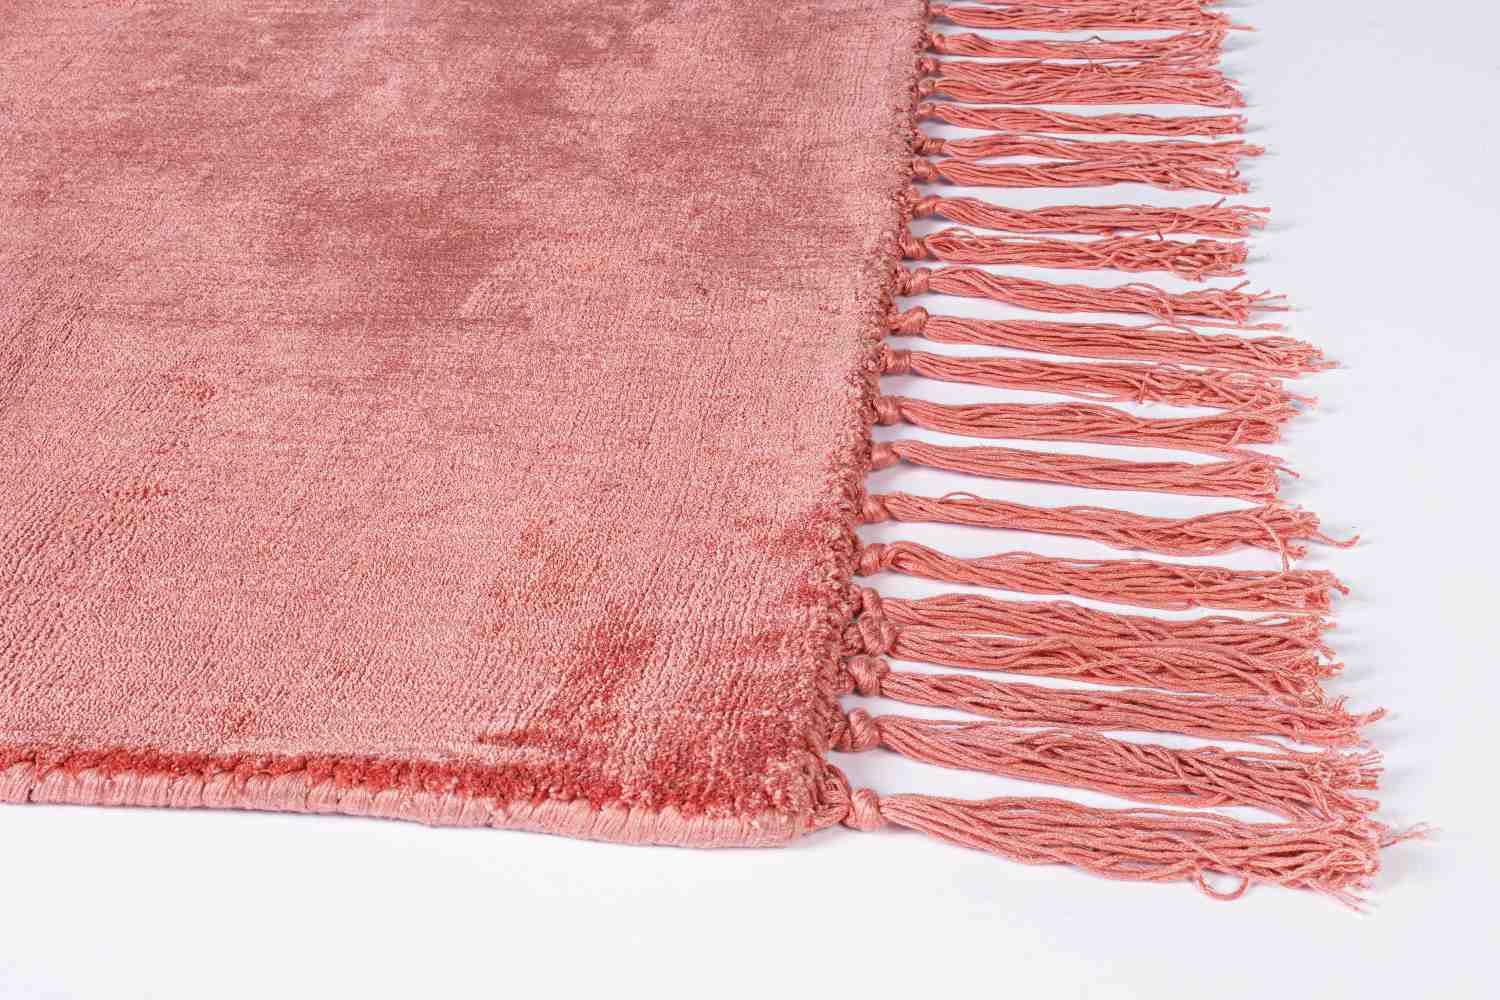 Der Teppich Belize überzeugt mit seinem klassischen Design. Gefertigt wurde die Vorderseite aus 100% Viskose und die Rückseite ist aus 100% Baumwolle. Der Teppich besitzt einen roten Farbton und die Maße von 160x230 cm.